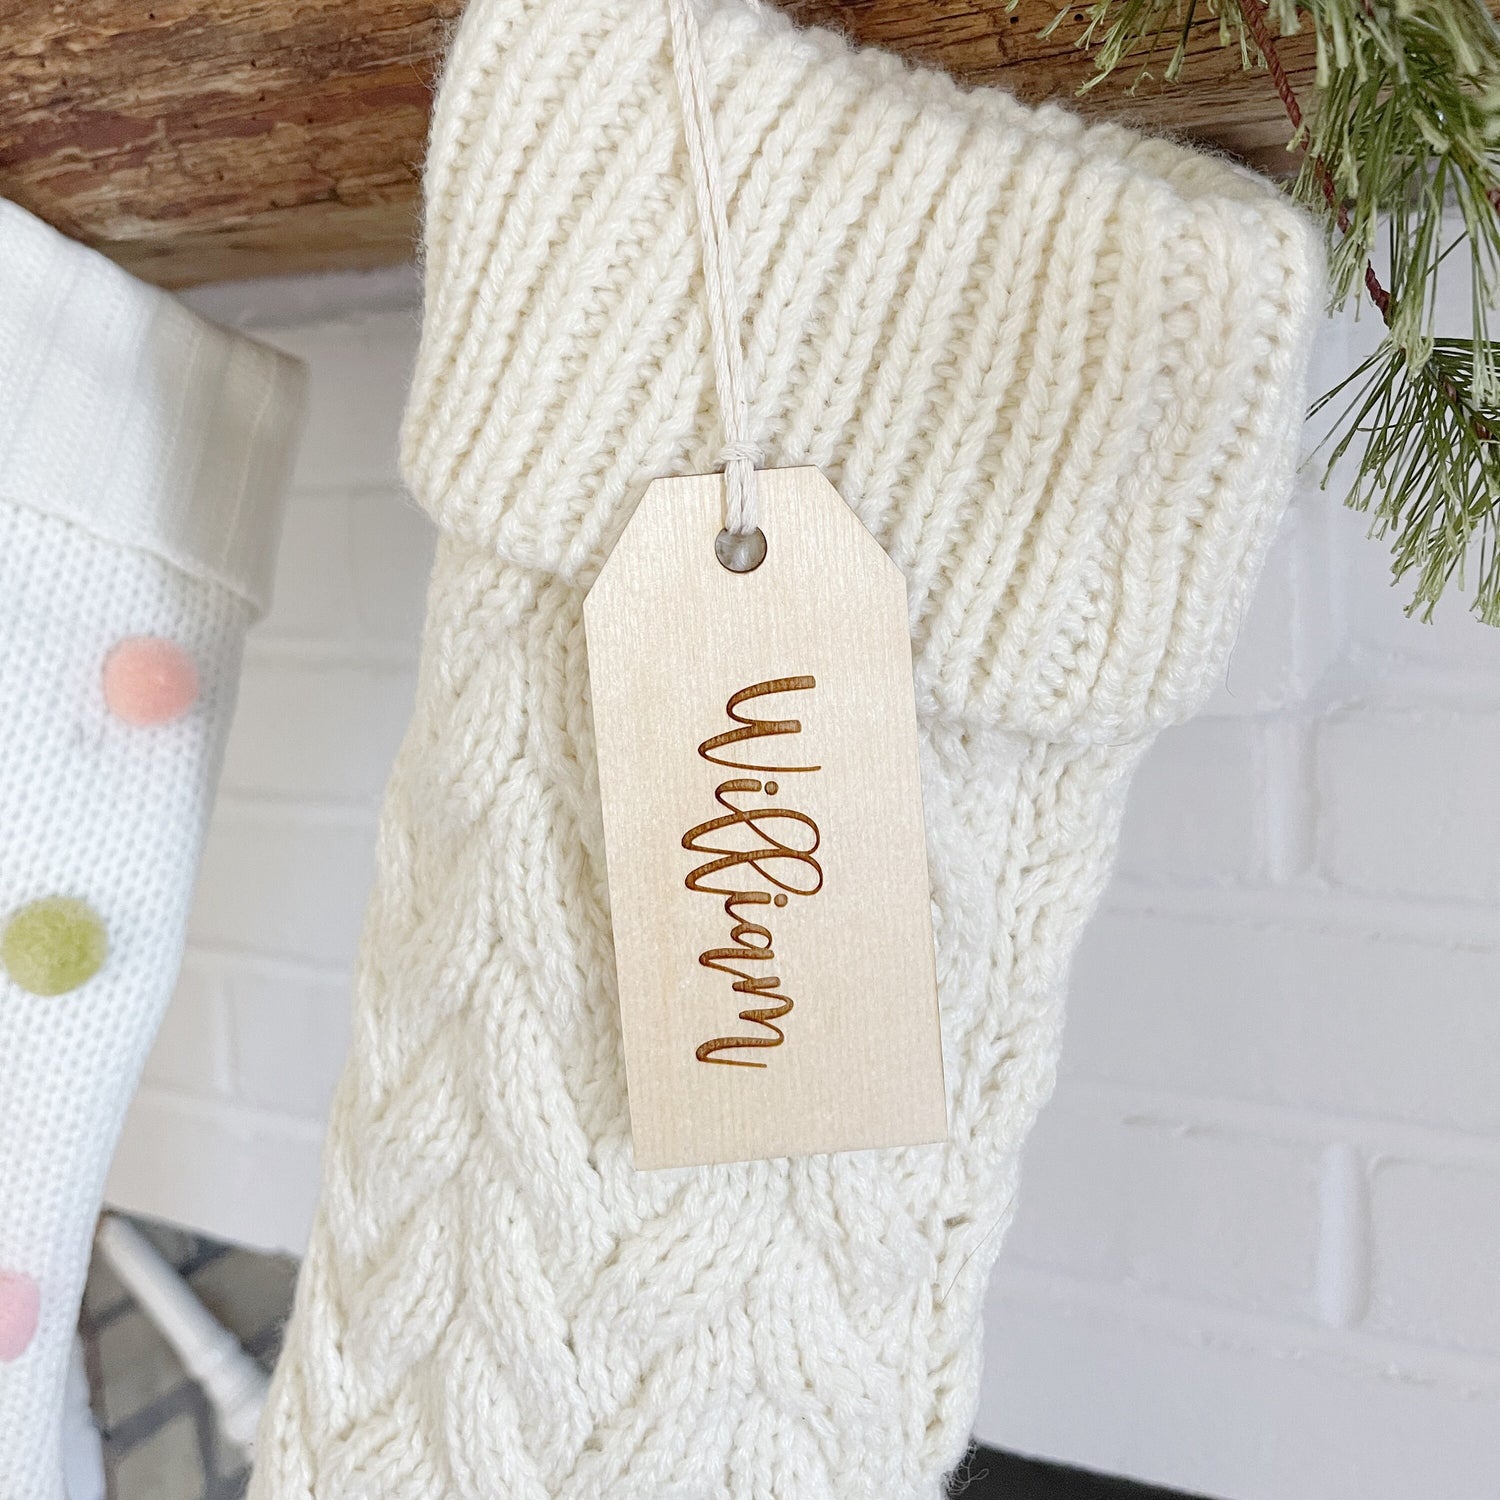 stocking name tag